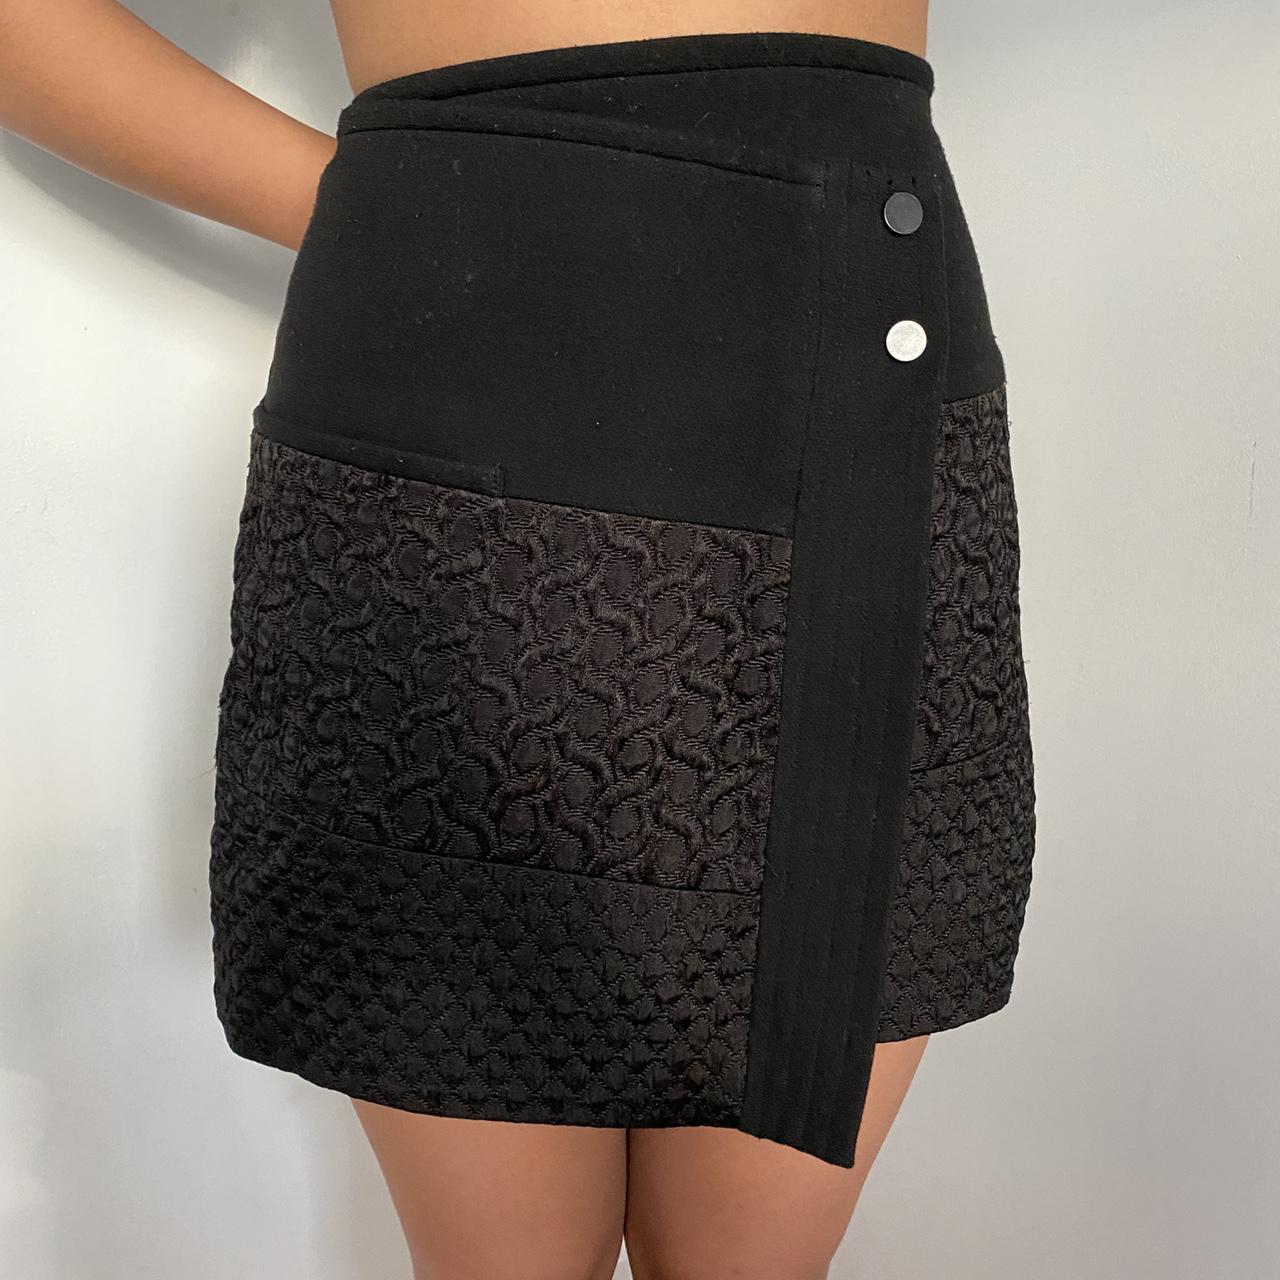 Zara Women's Black Skirt